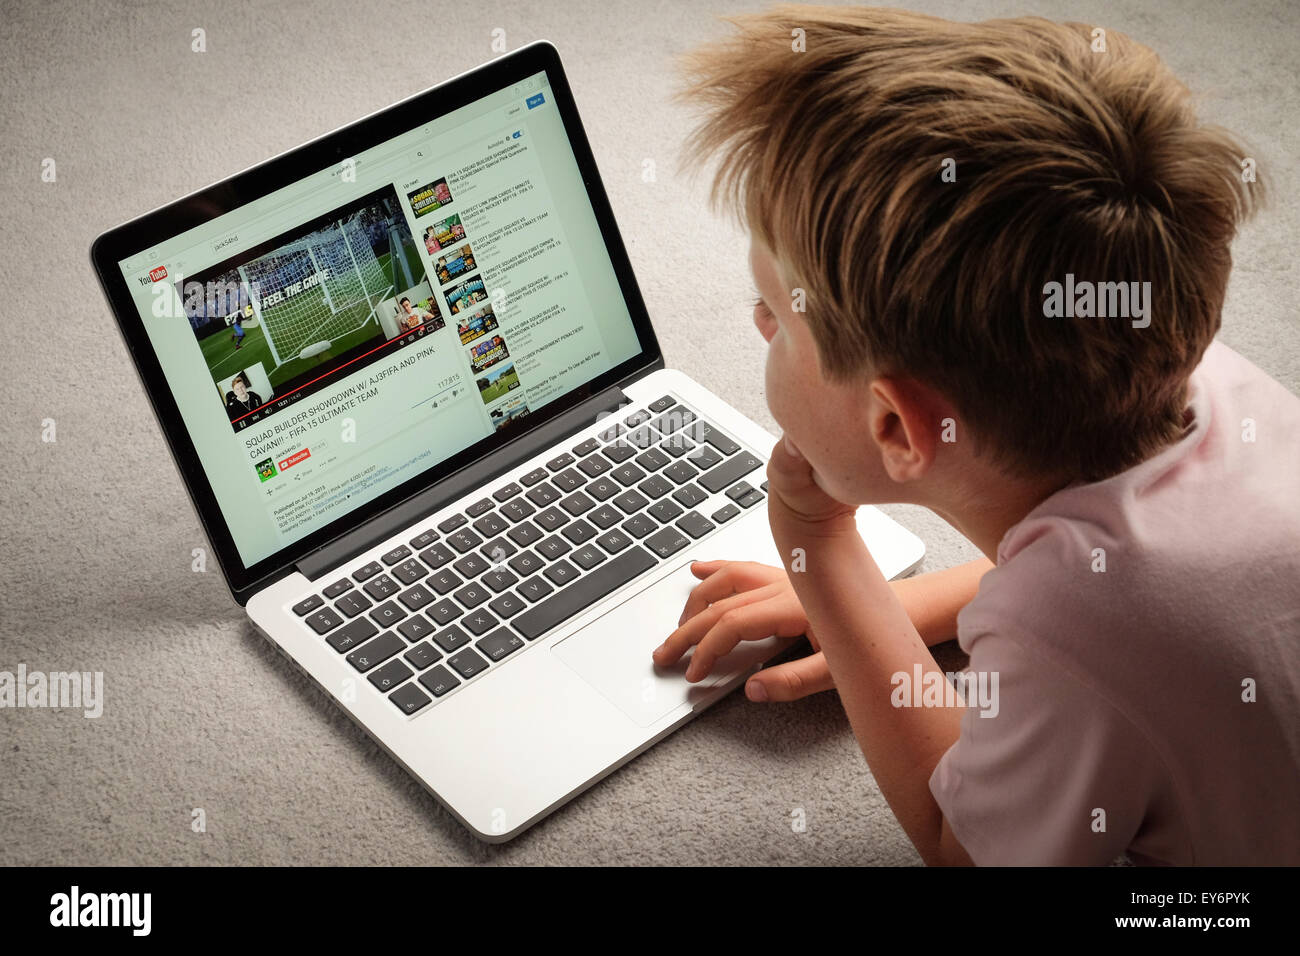 Un enfant de regarder des vidéos Youtube sur un ordinateur portable Banque D'Images